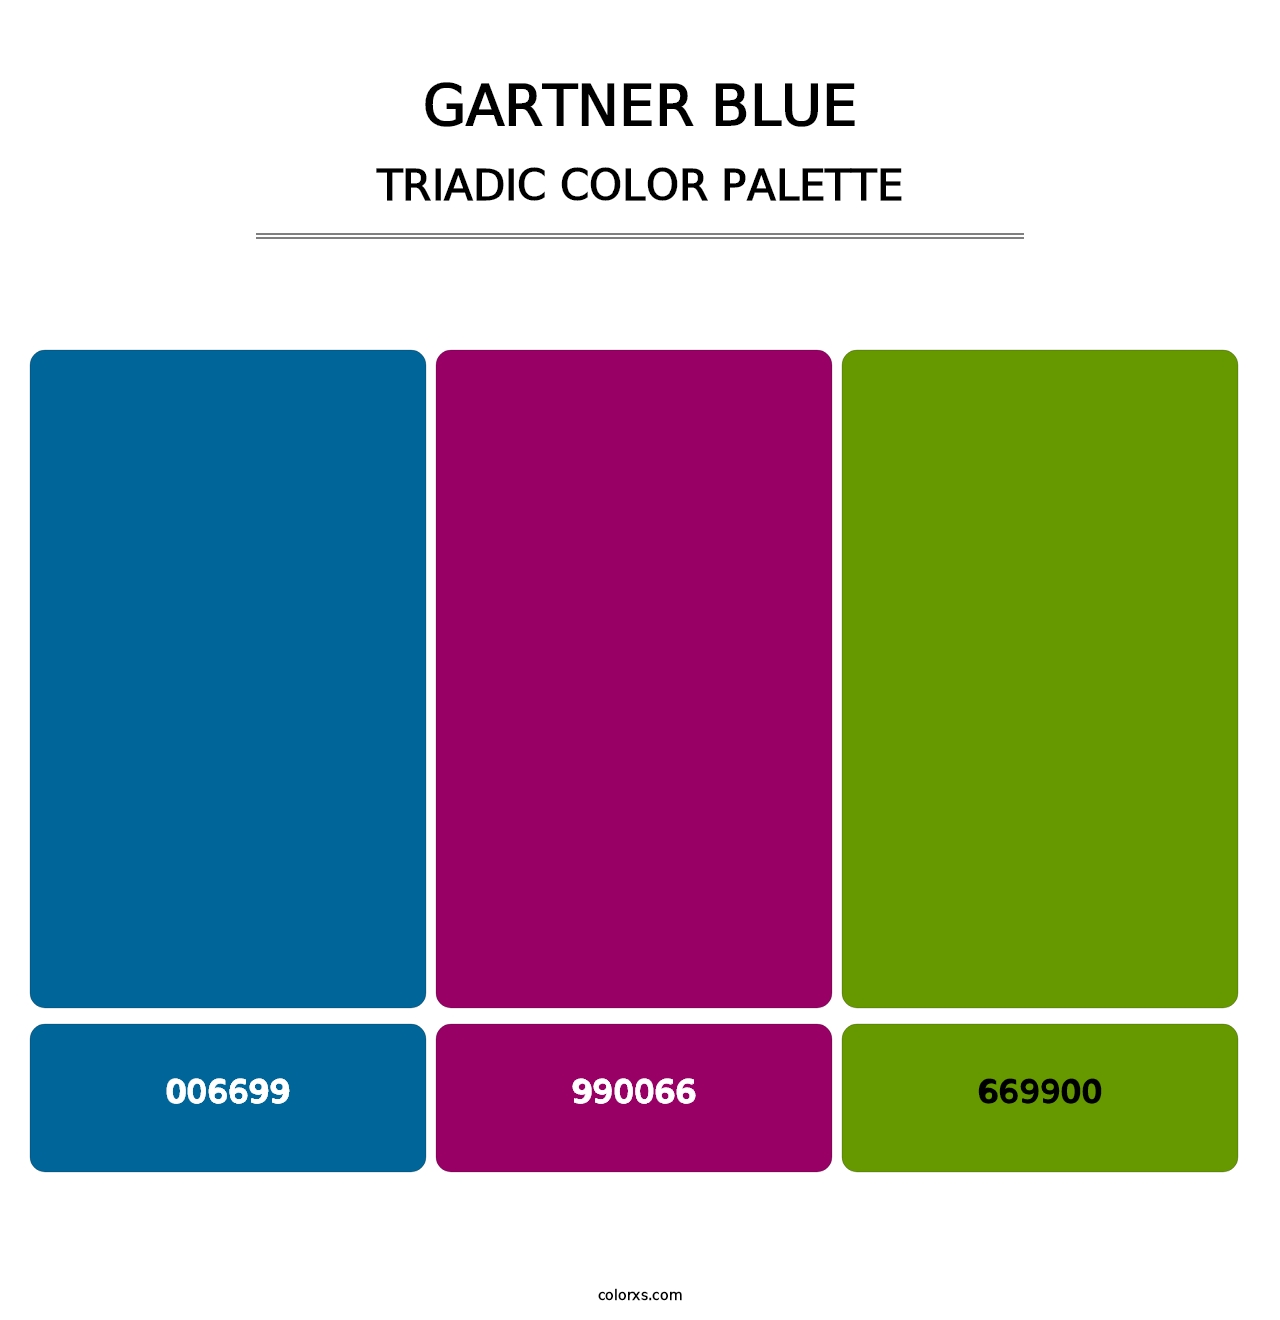 Gartner Blue - Triadic Color Palette